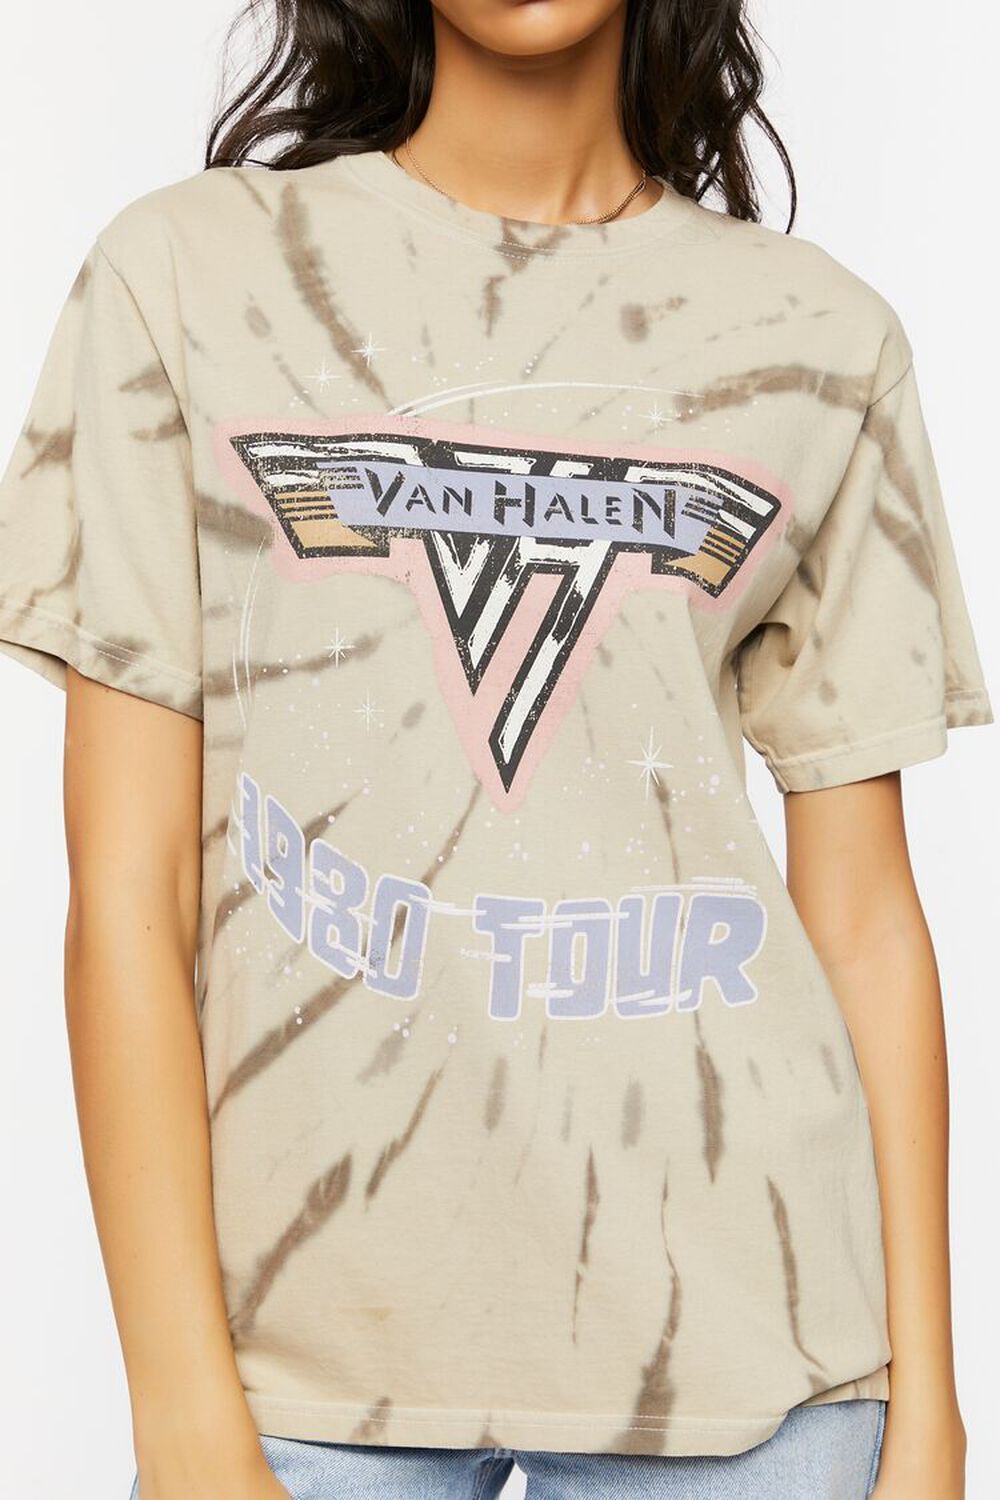 Van Halen Tour Graphic Tee | Forever 21 (US)